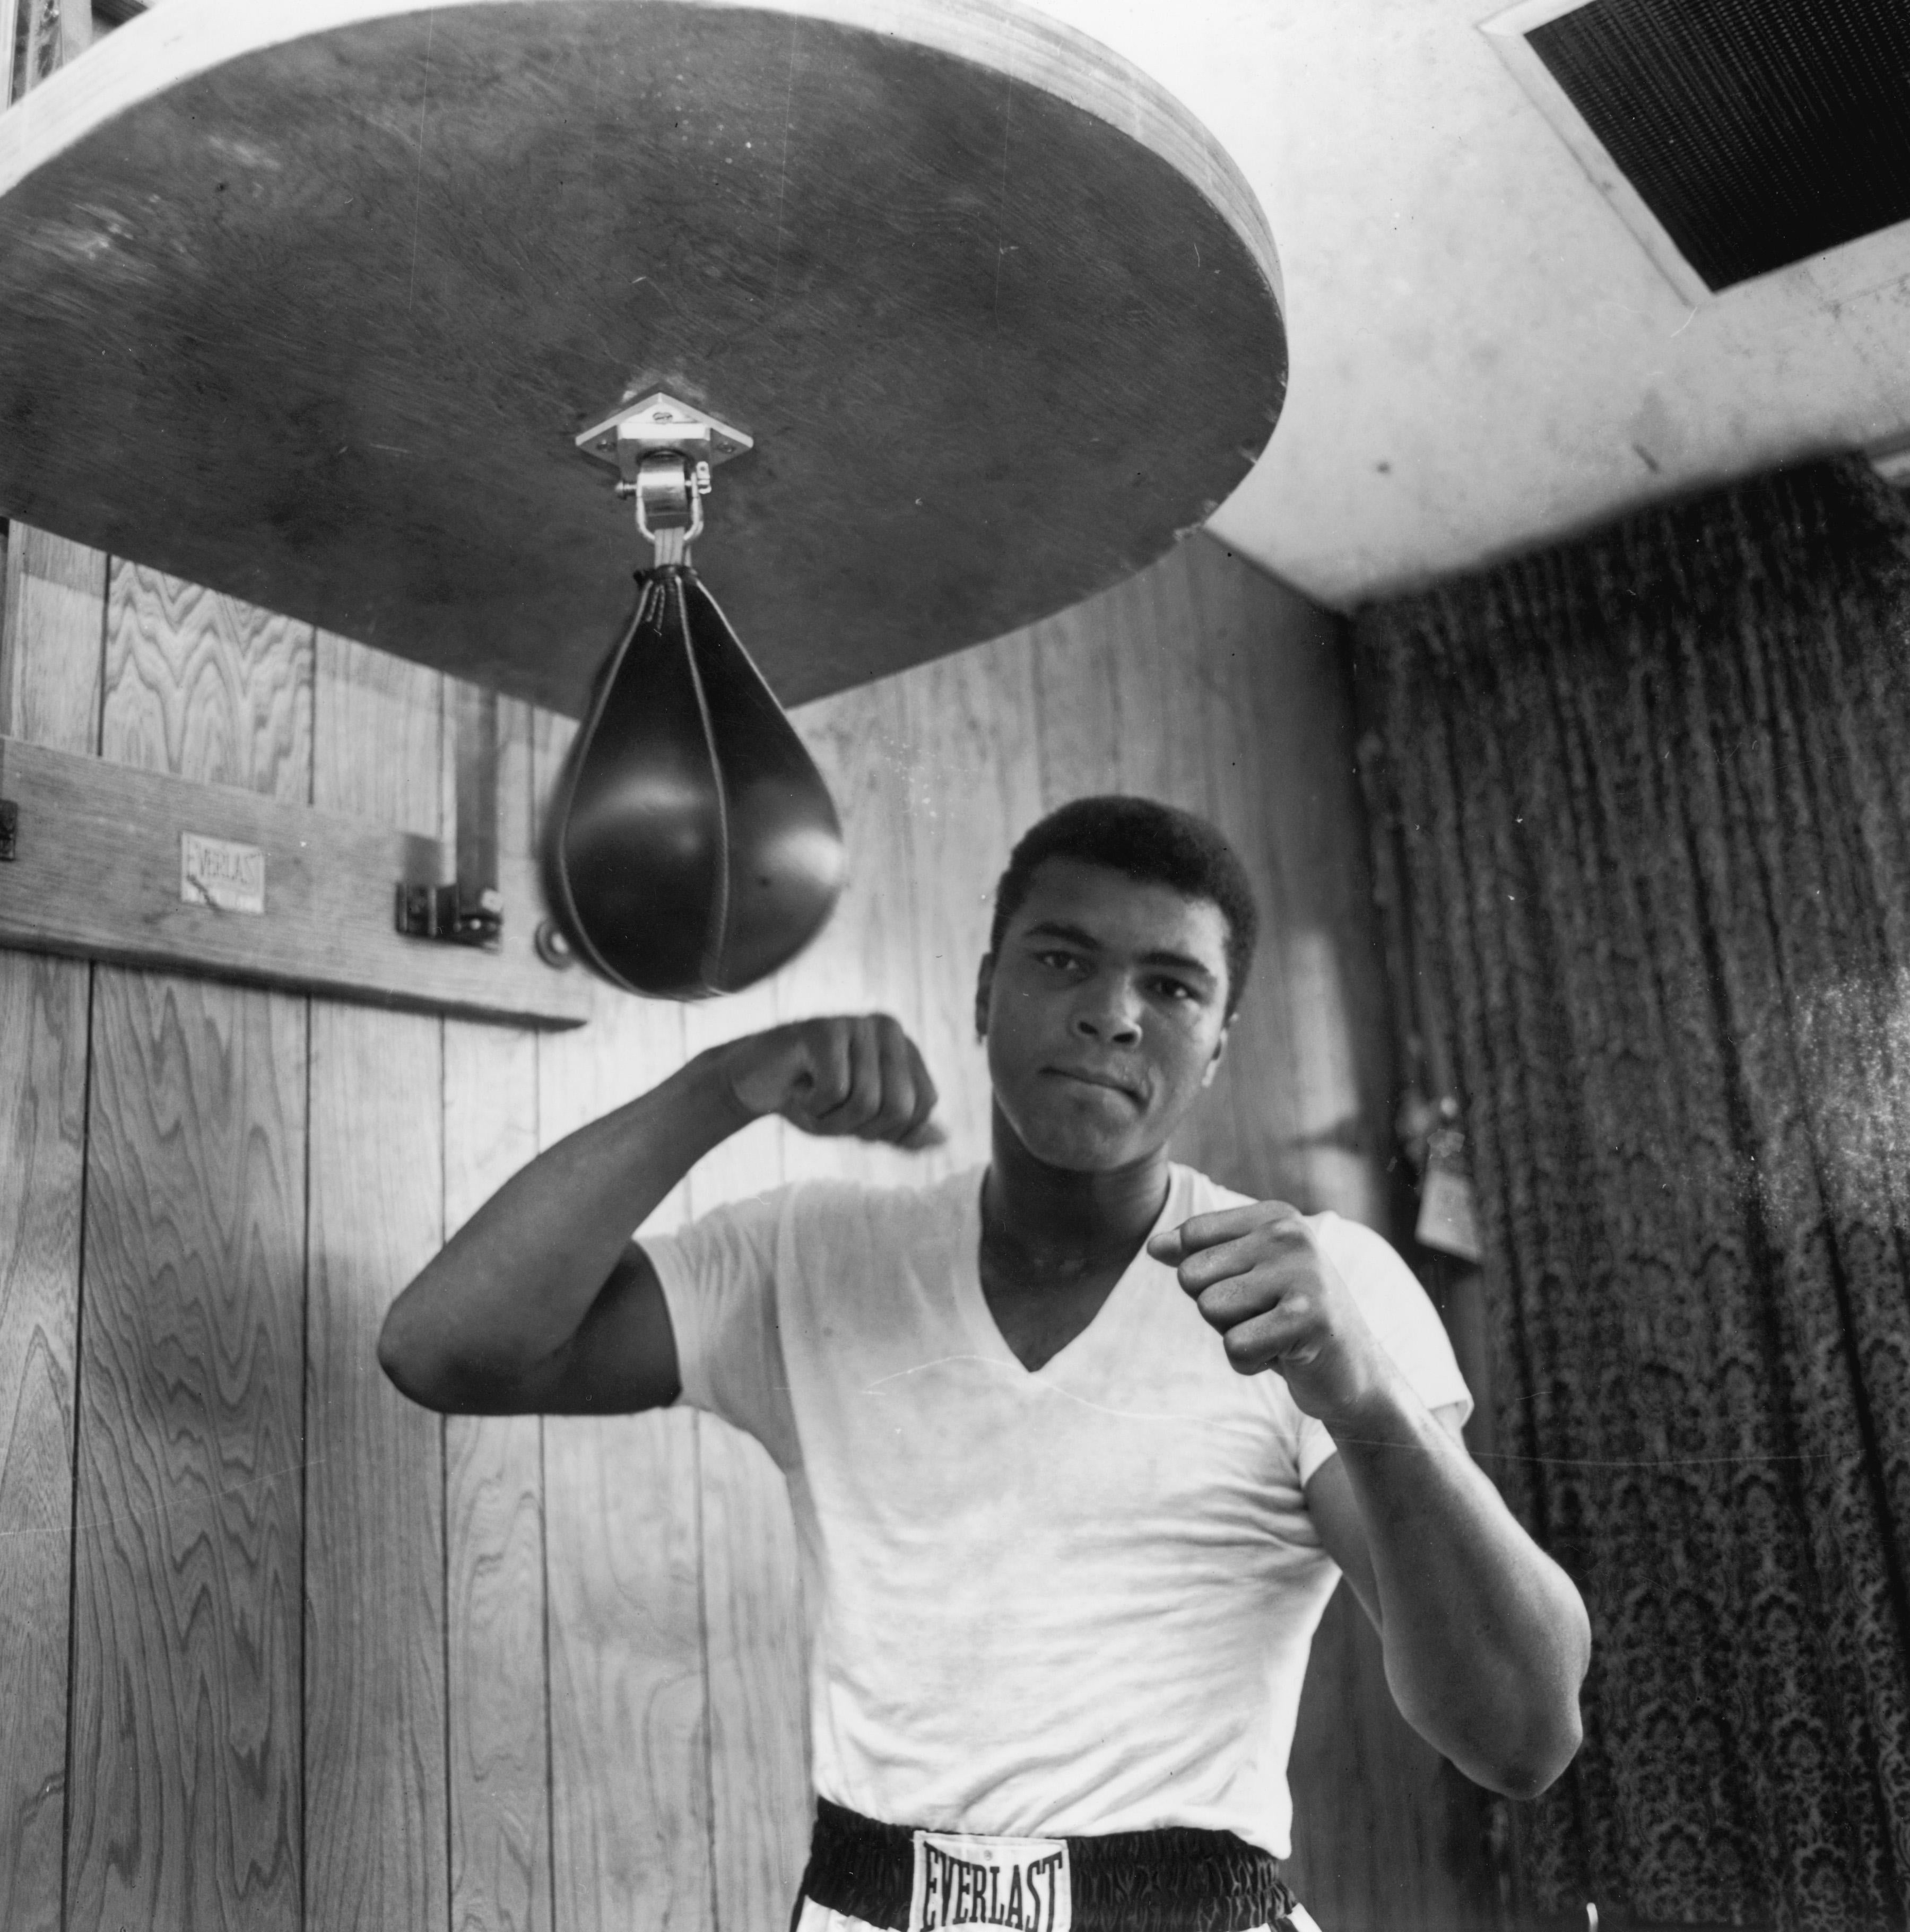 Der amerikanische Schwergewichtsboxer Cassius Clay (später Muhammad Ali) beim Training in seinem Fitnessstudio, 21. Mai 1965. (Foto: Harry Benson/Express/Hulton Archive/Getty Images)

Als autorisierter Partner von Getty Images Gallery bieten wir